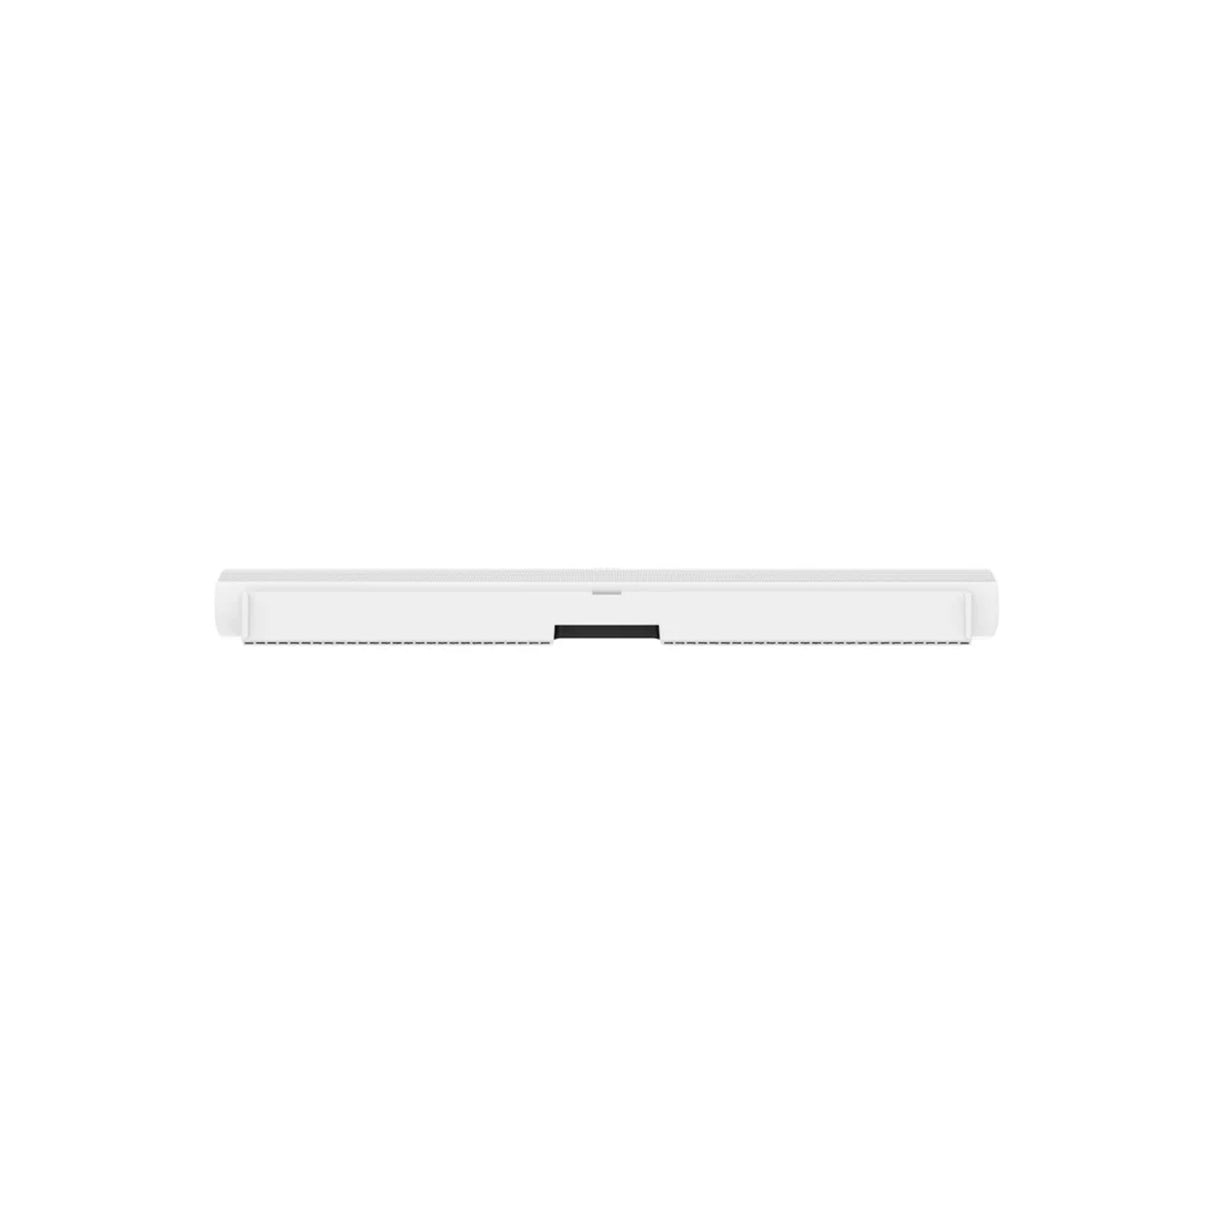 Sonos Premium Immersive 5.1 Set with Arc Wireless Soundbar, Sub Wireless Subwoofer (Gen 3) & Era 100 Wireless Smart Speakers 5.1 Bundle Package (White)